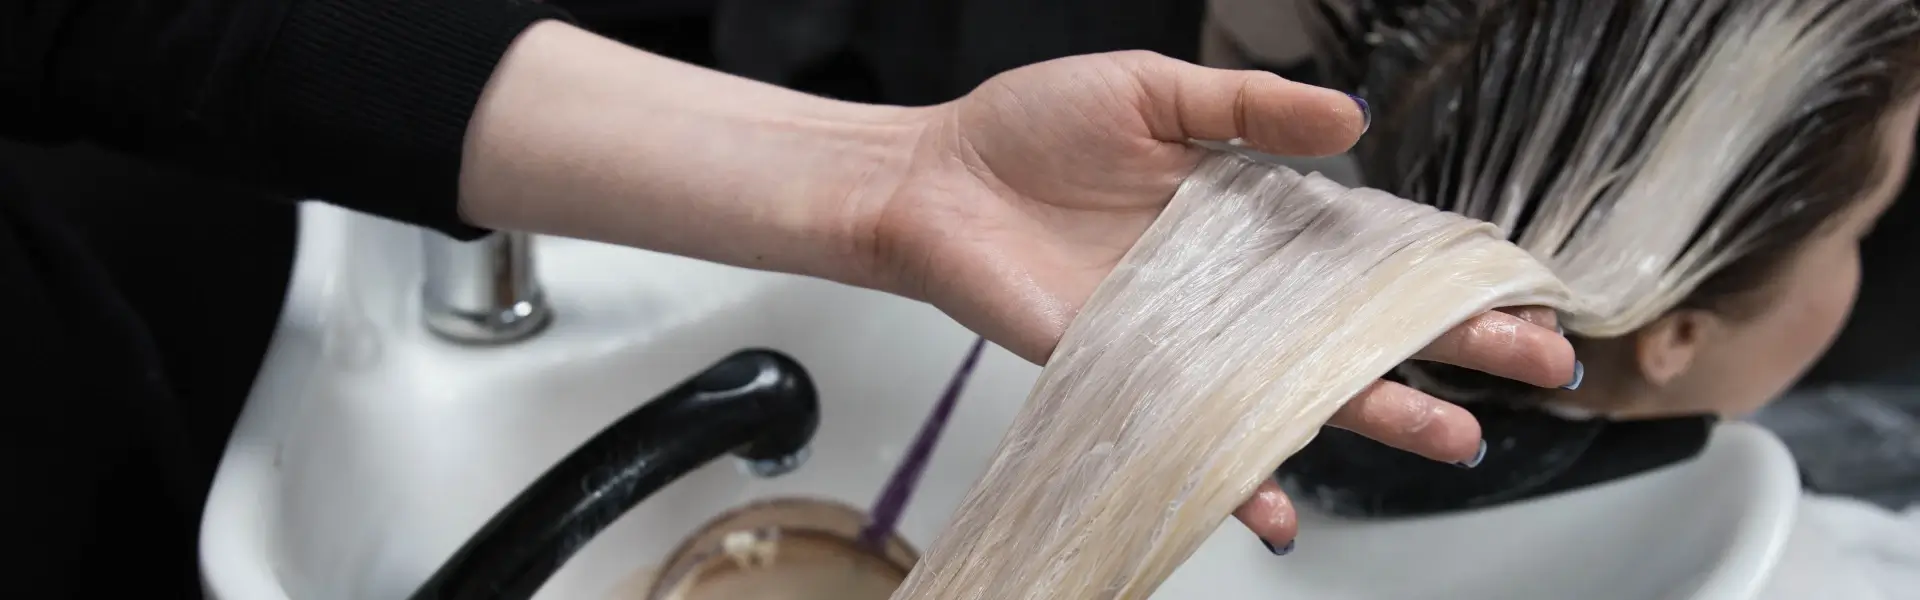 כיצד להסיר צבע שיער מהעור לאחר התייבשותו